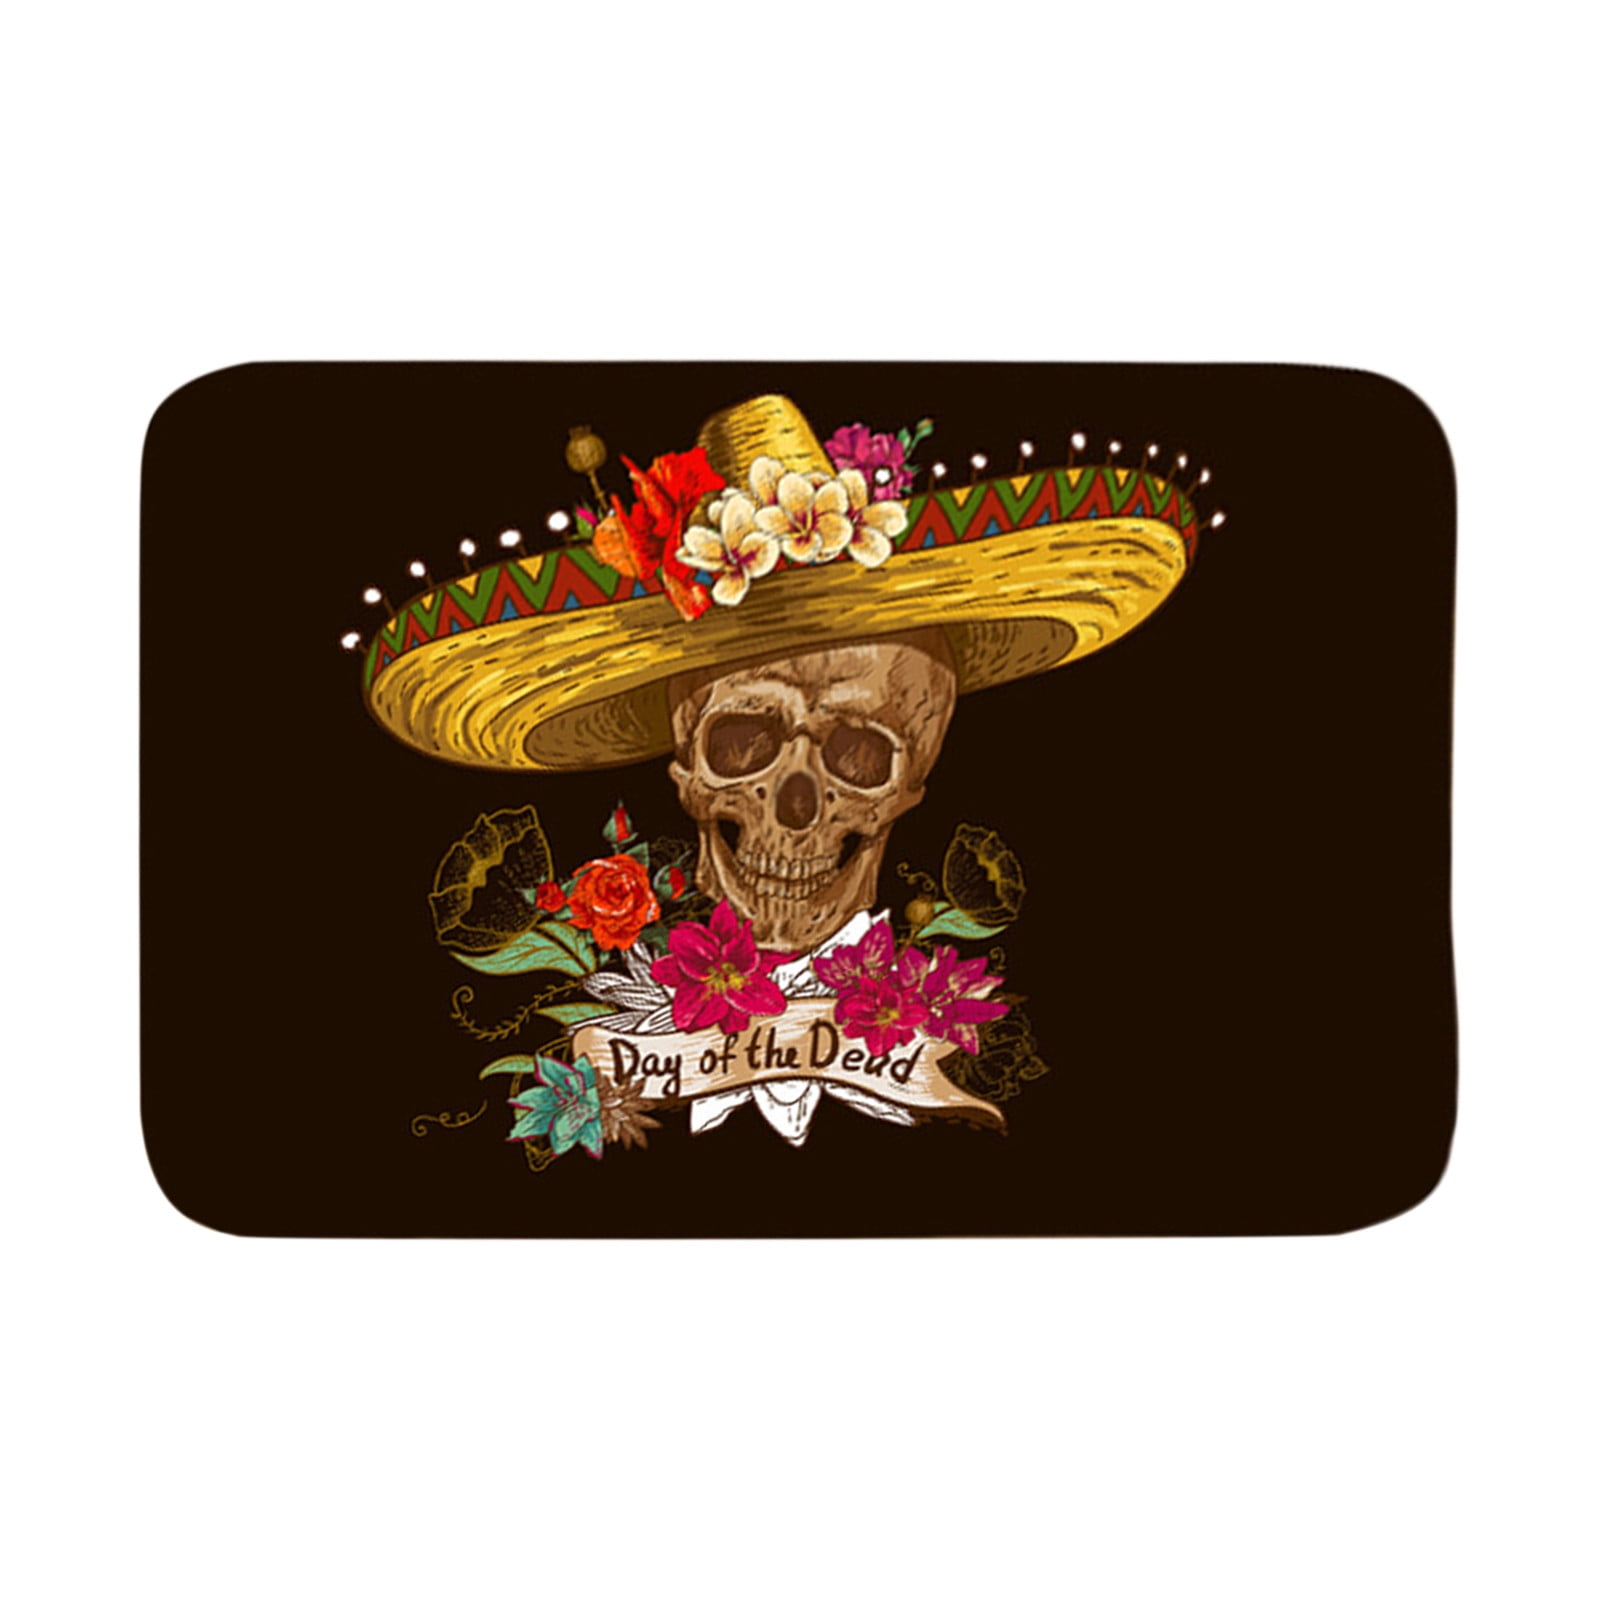 Sugar Skull in Sombrero with Flowers Bath Rug Bathroom Non-Slip Door Mat 16x24" 